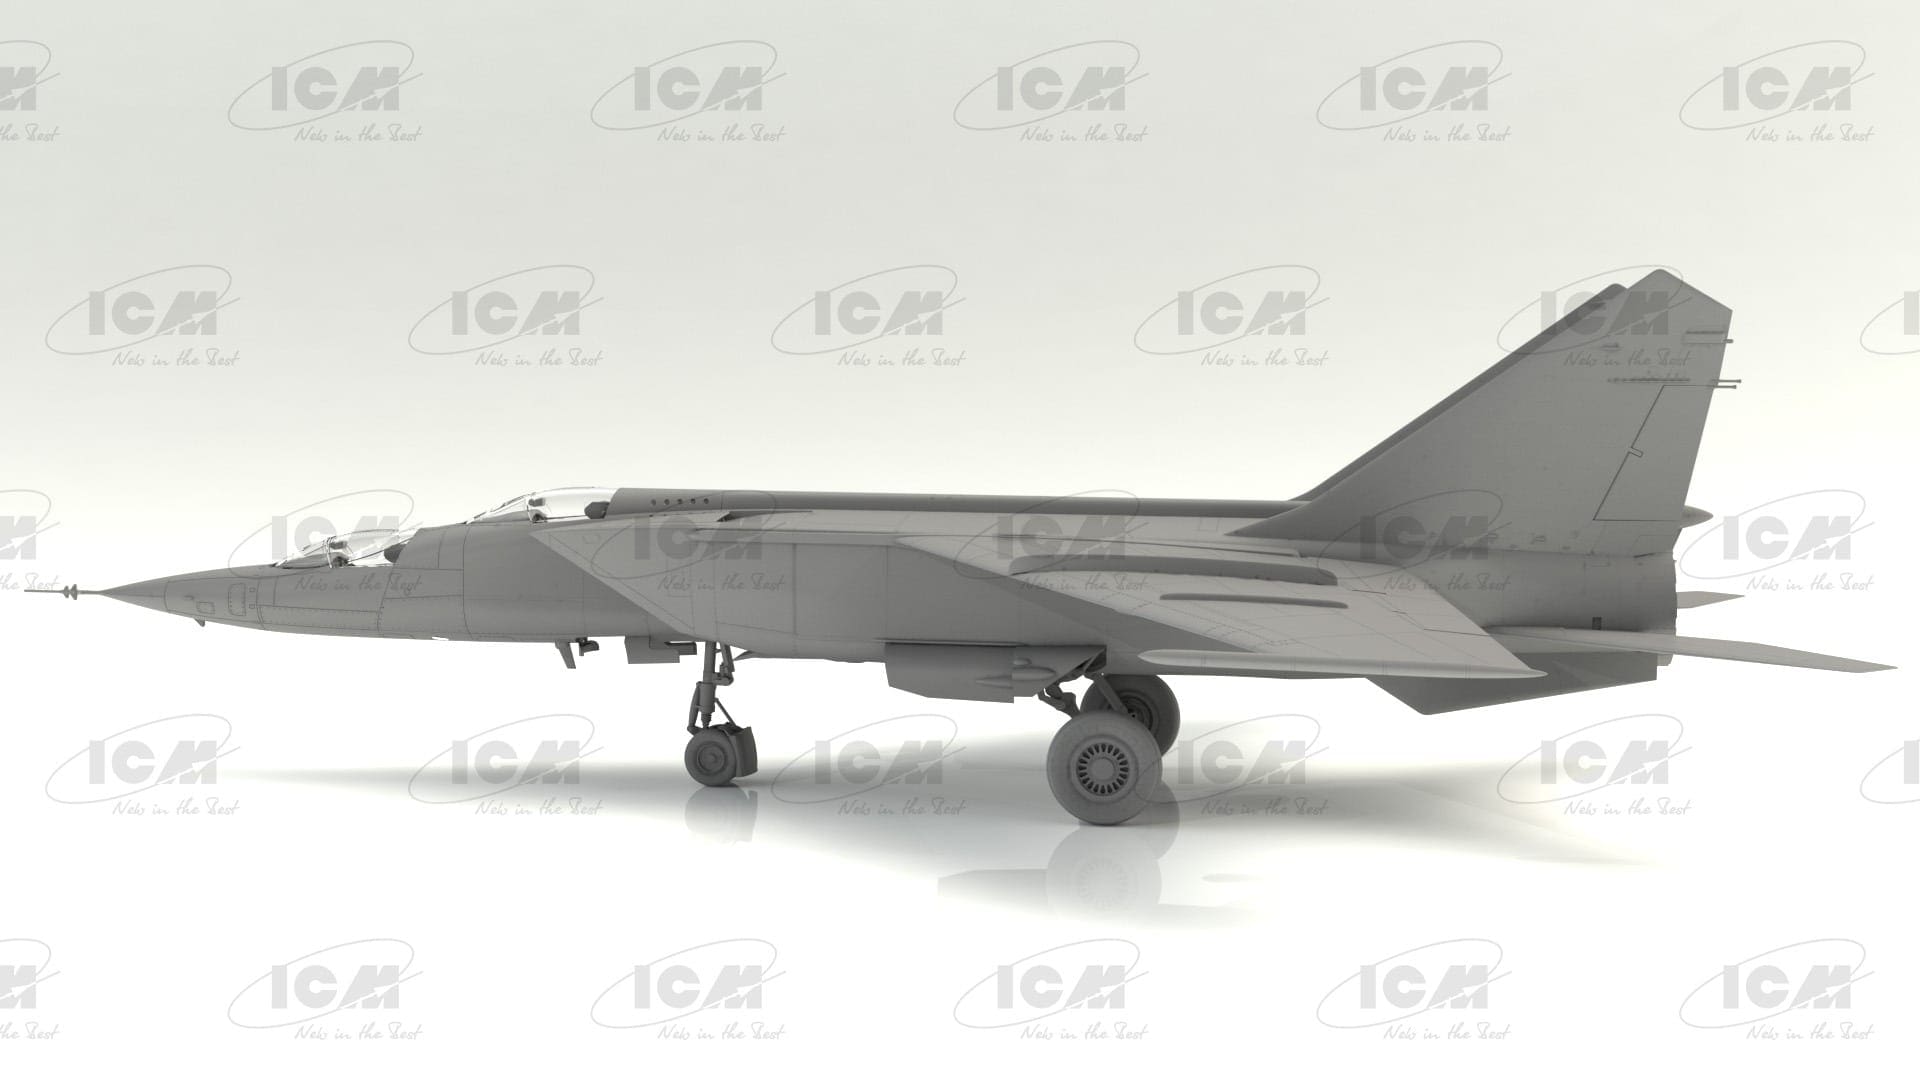 ICM72176 ICM 1:72 Soviet Training Aircraft MiG-25 RU 